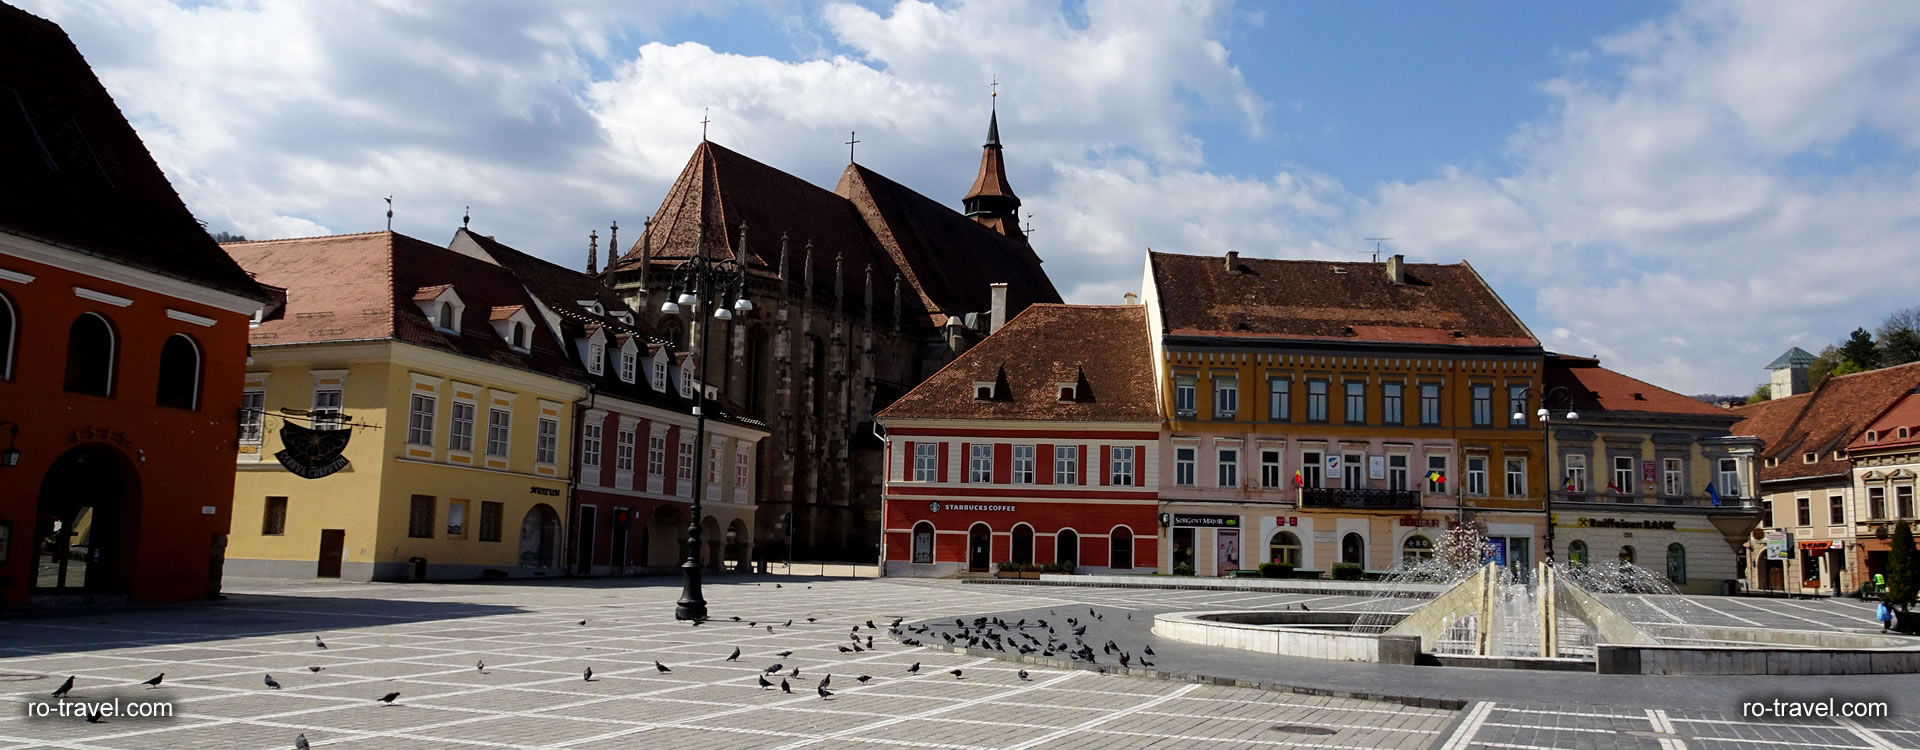 Brasov Council Square